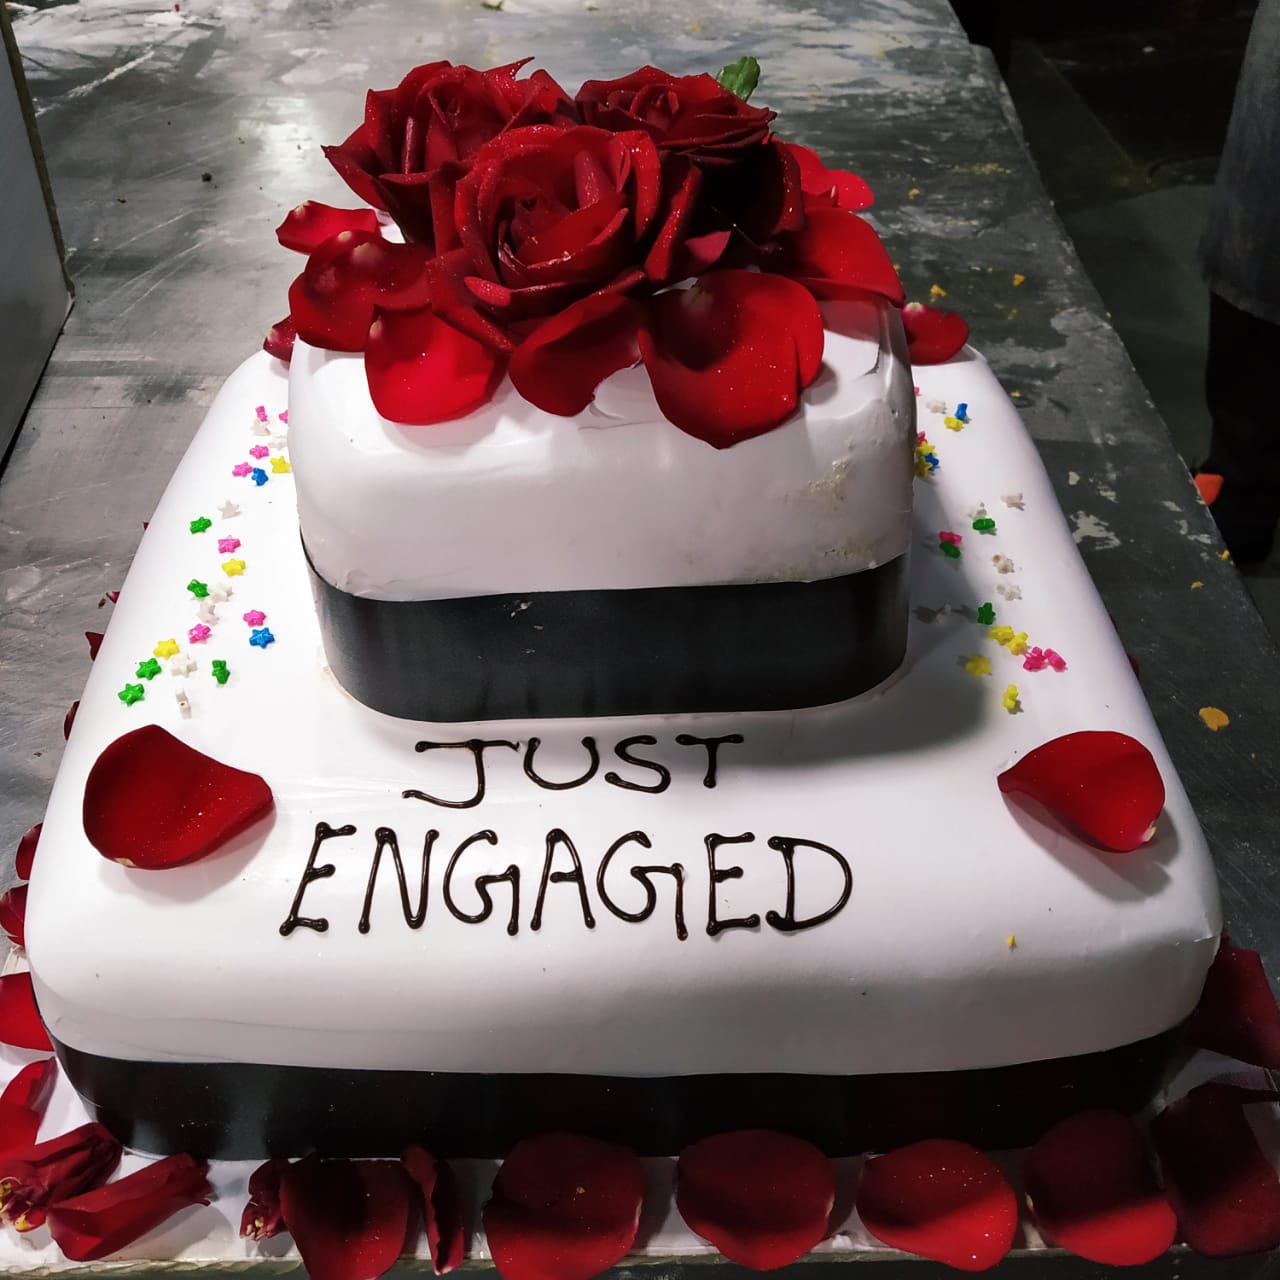 Happy engagement cake - honeyamlani488484gmail.com_ | Facebook